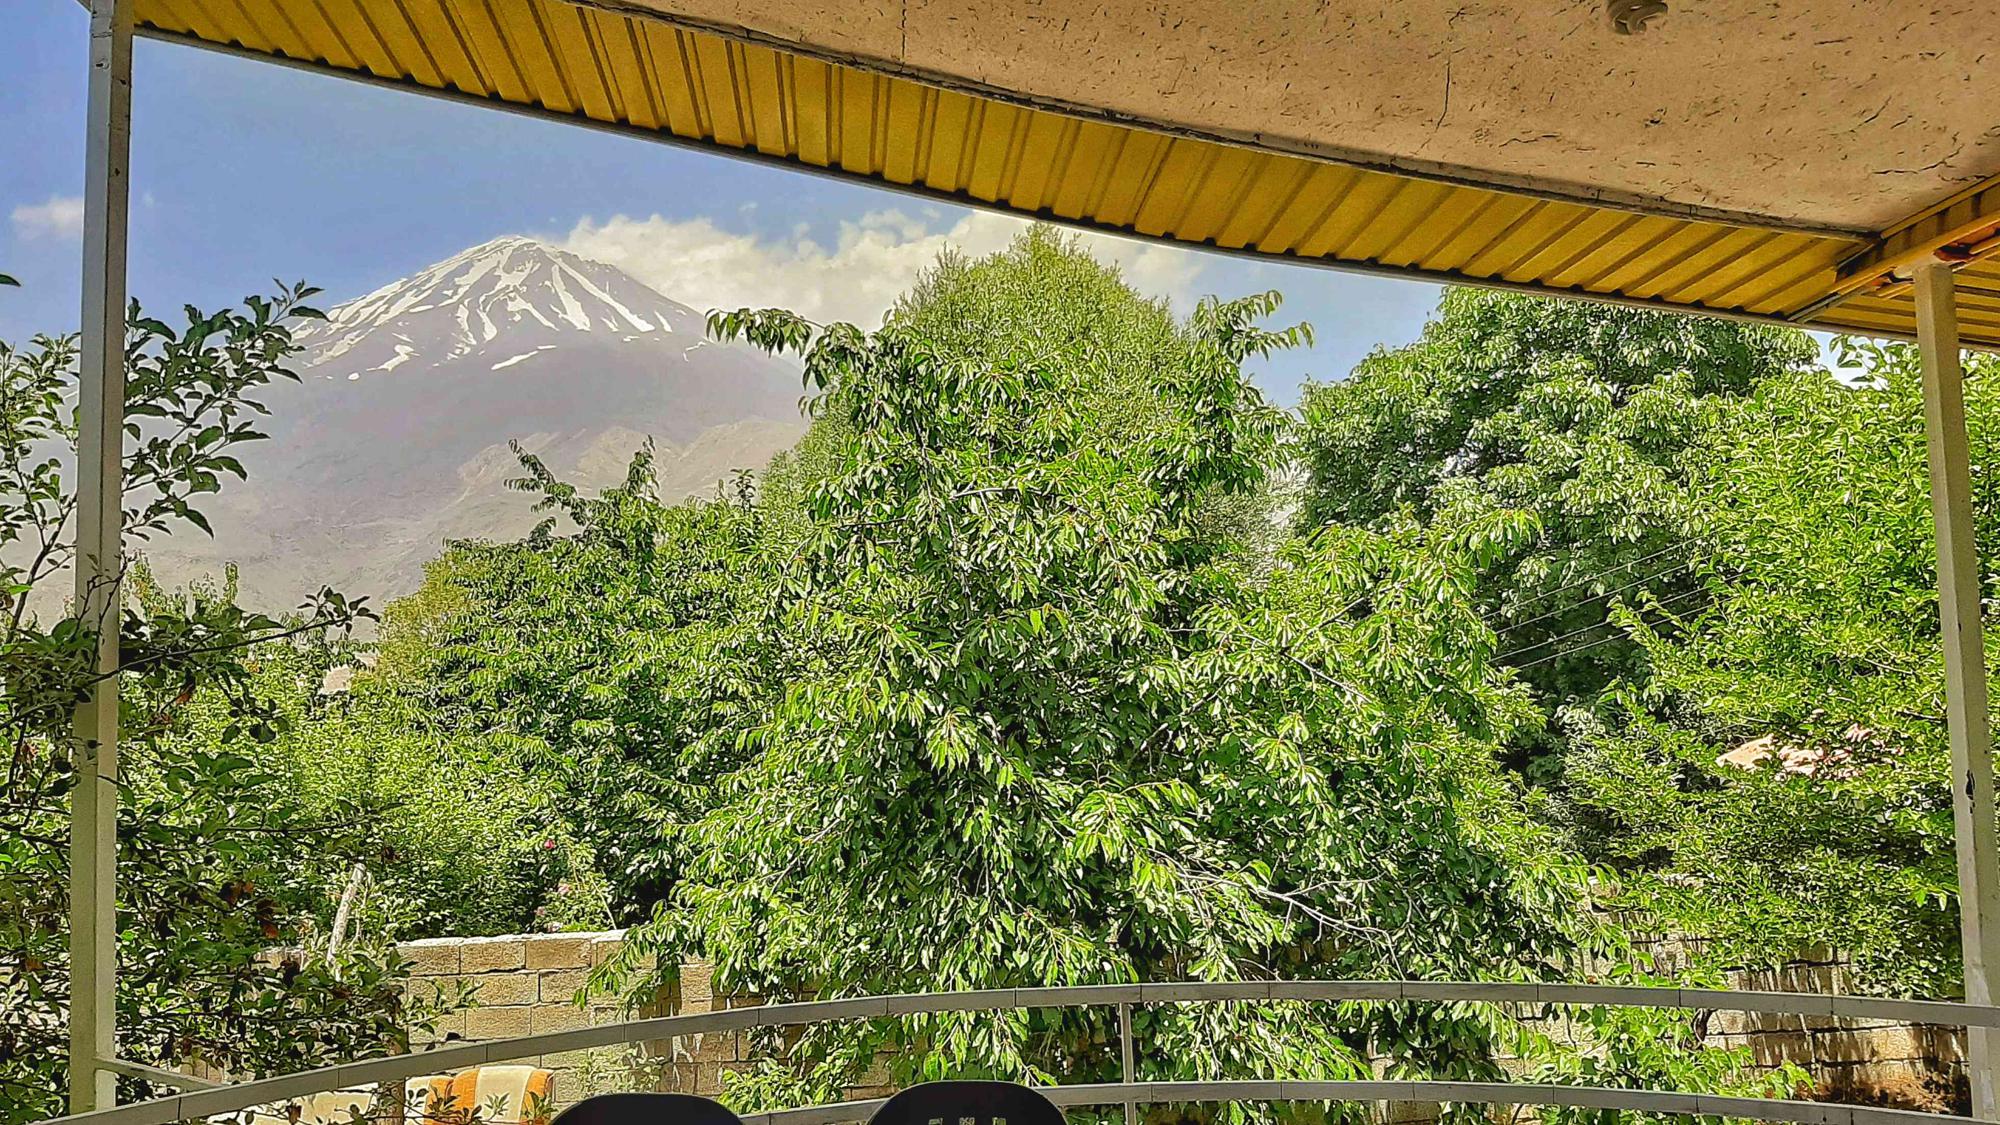 فروش خانه باغ ۵۵۰ متر در منطقه ایرا لاریجان واقع در جاده هراز بالای آب اسک ویو قله دماوند